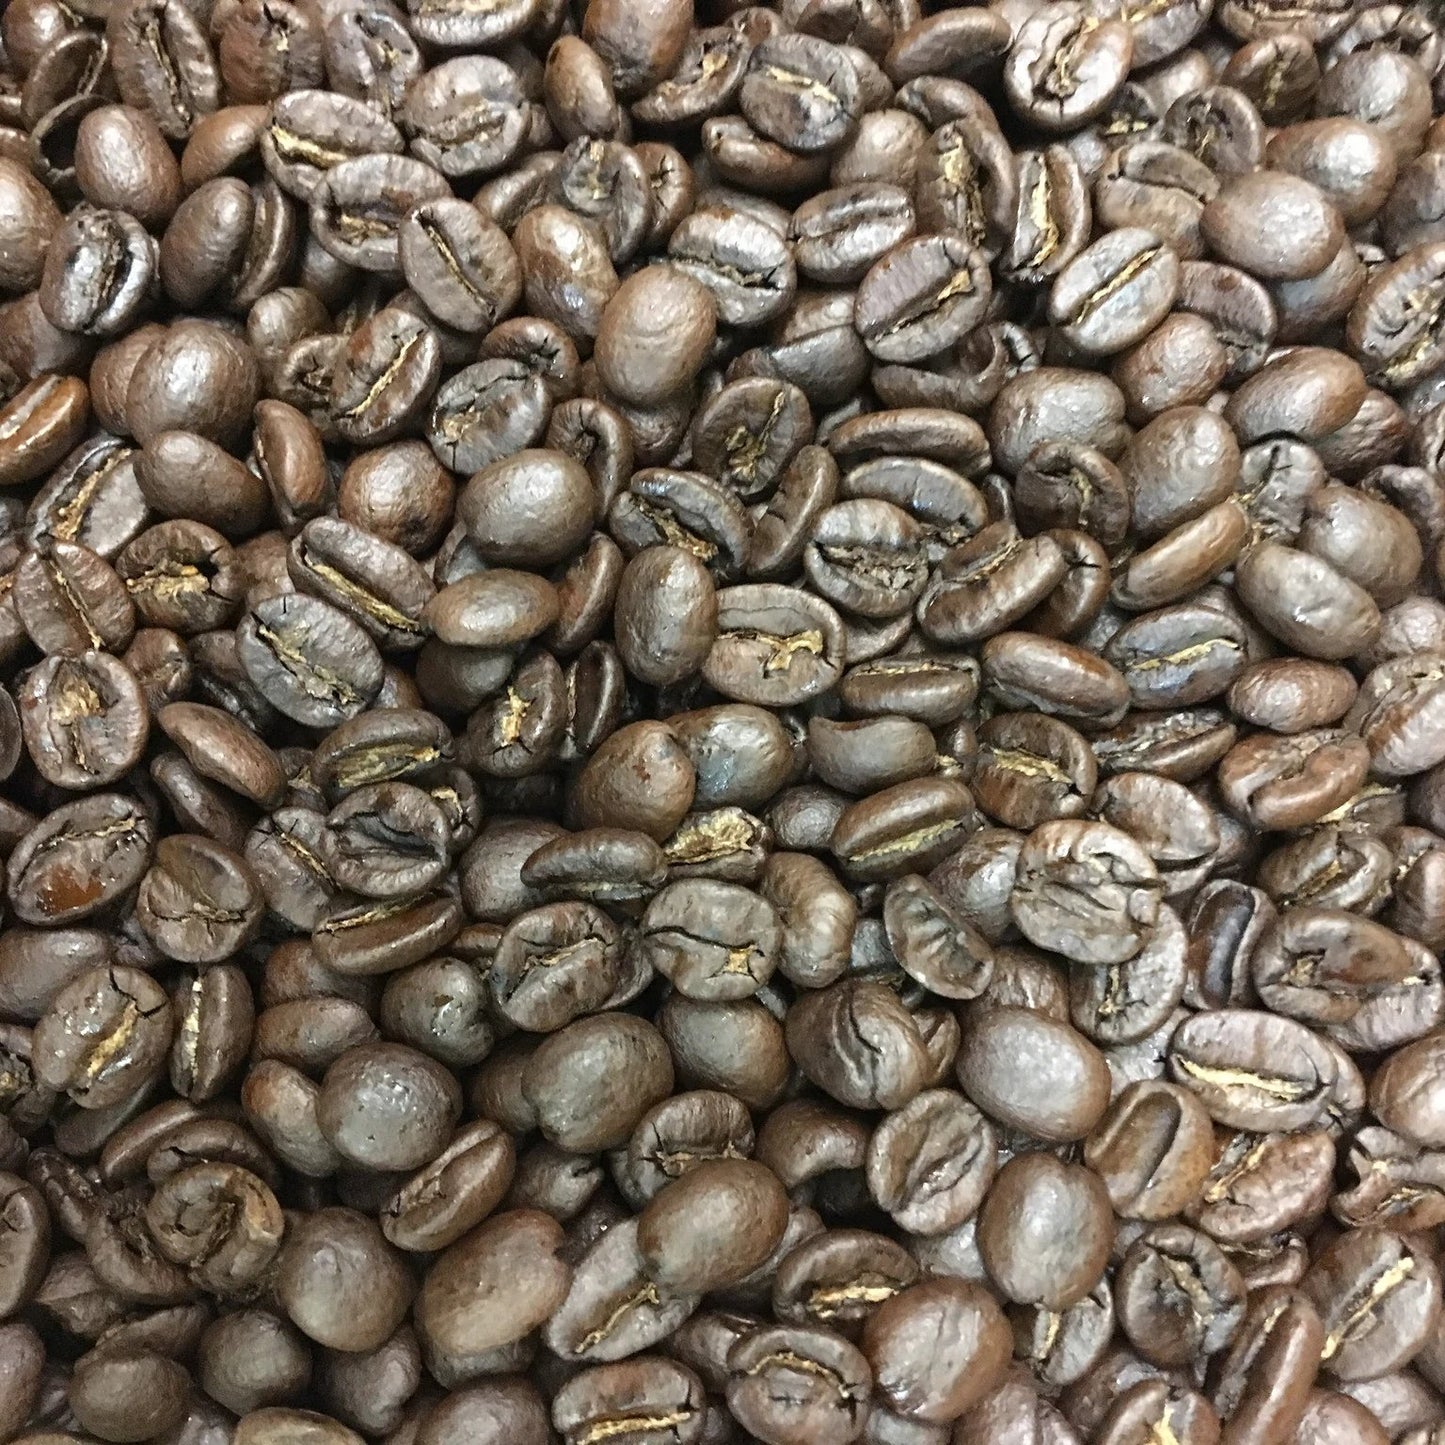 Rare African Malawi Coffee